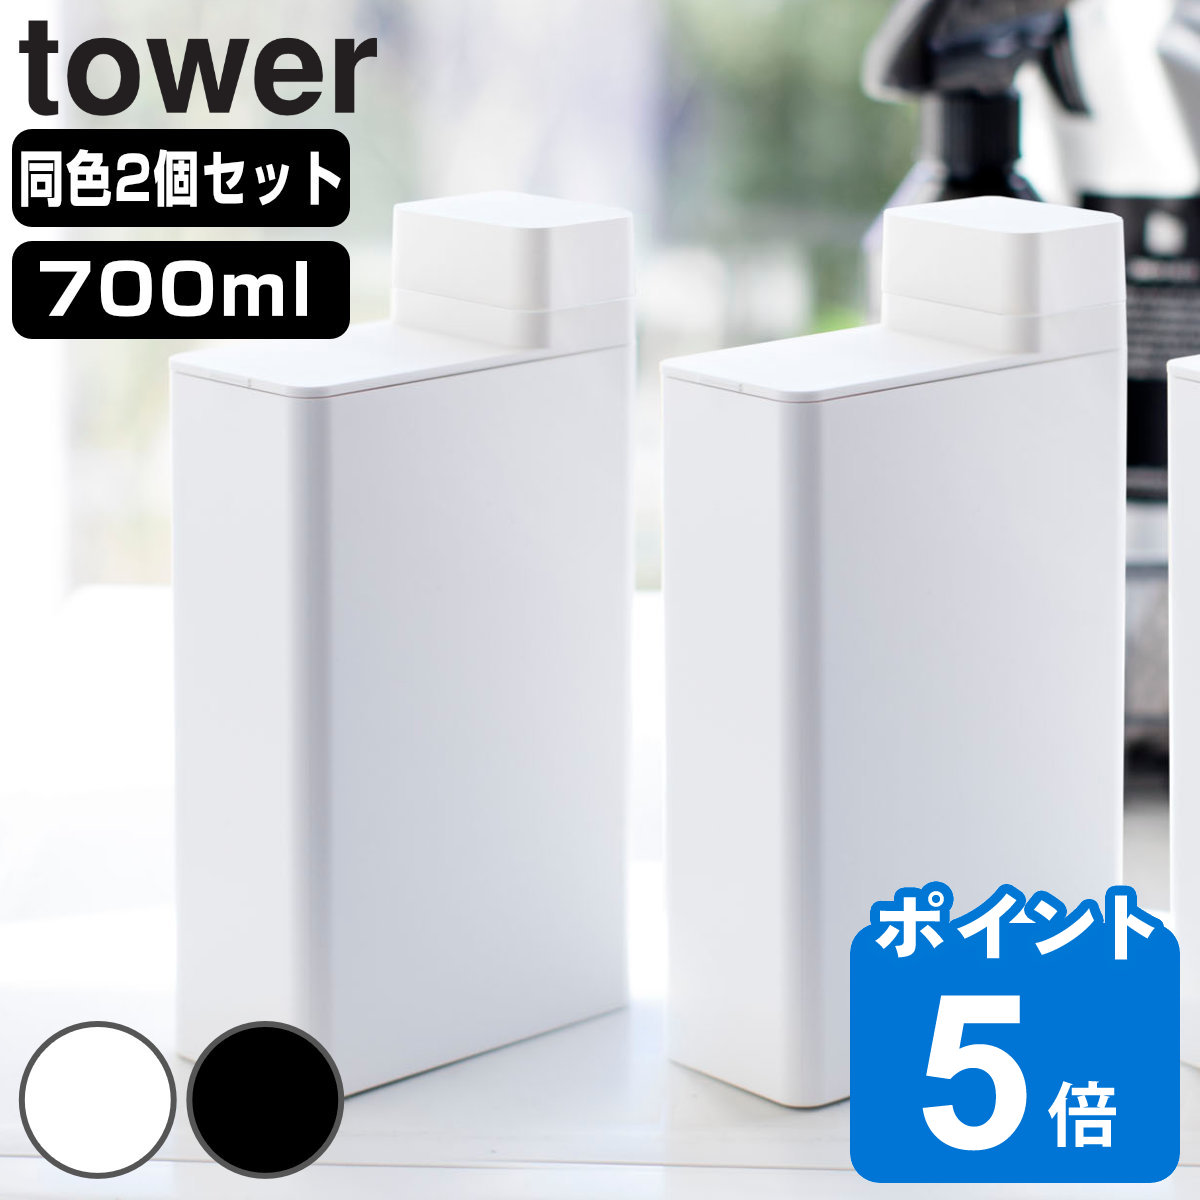 山崎実業 tower 詰め替え用ランドリーボトル タワー 2個セット